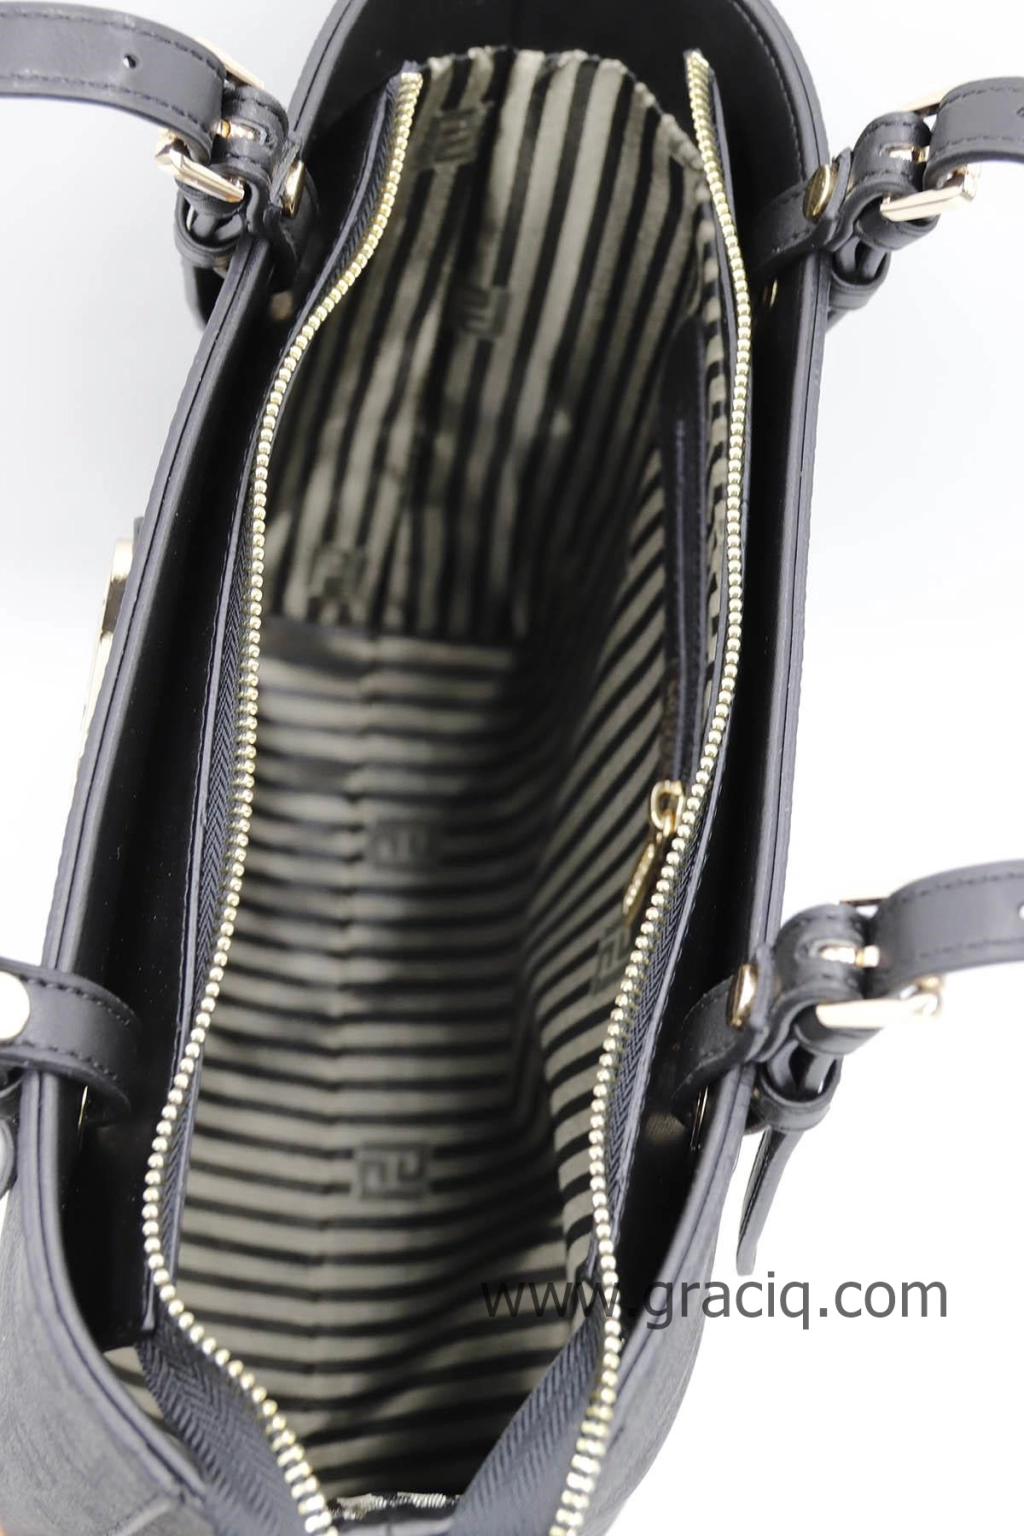 Дамска чанта Silver&polo в цвят черен